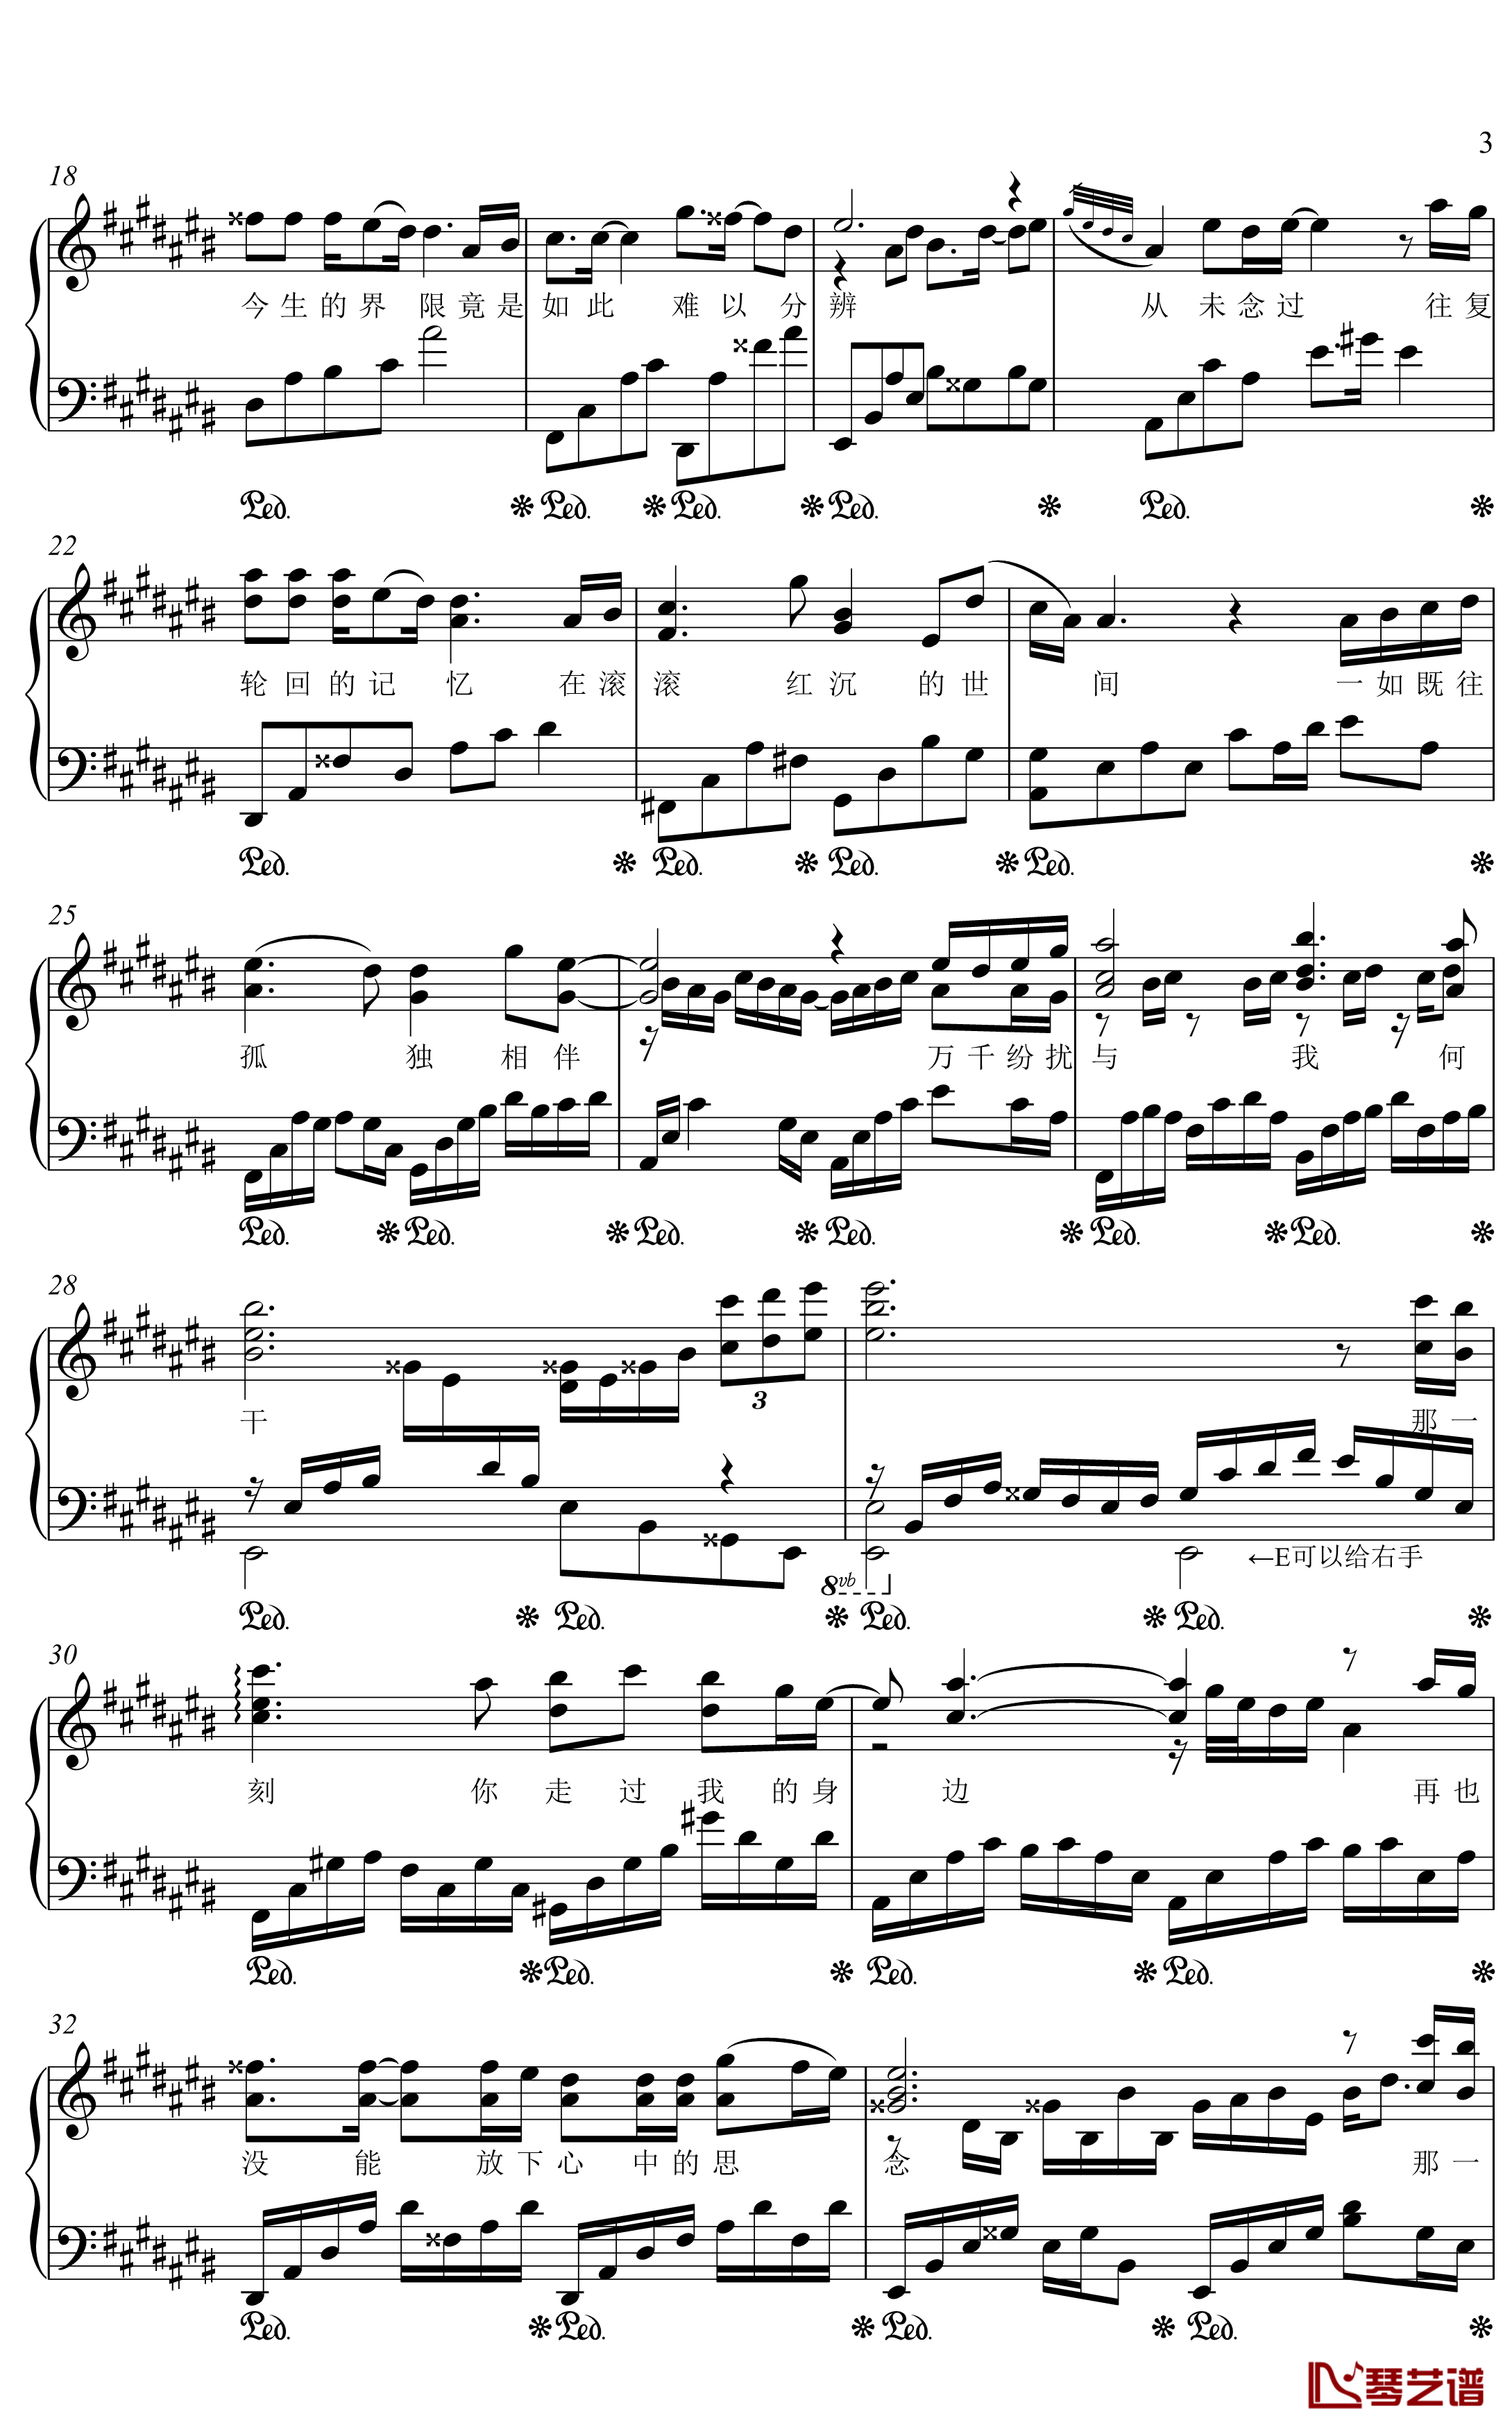 原点钢琴谱 画江湖与不良人-金老师独奏1910033